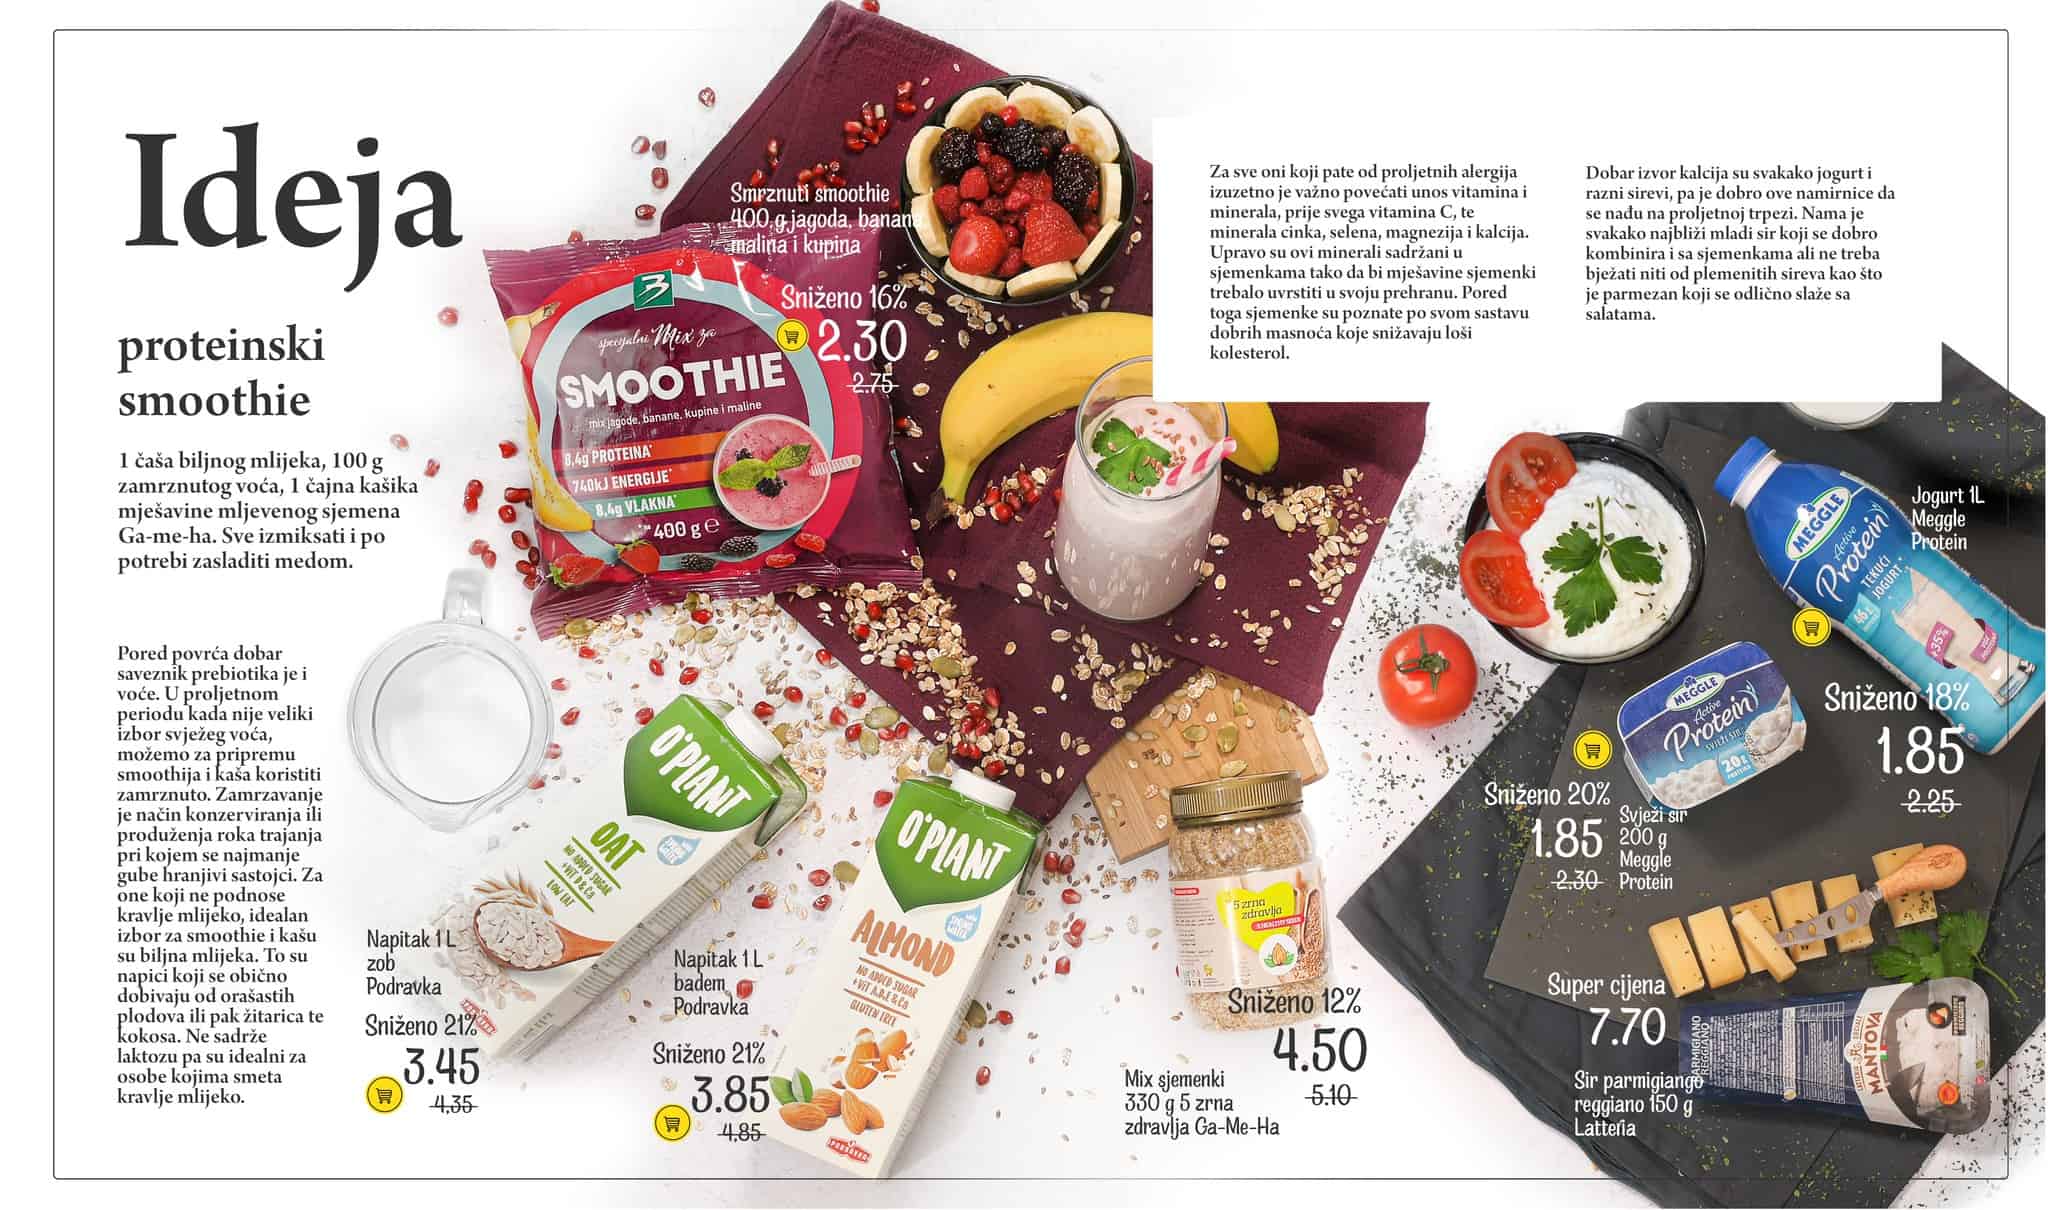 Bingo Magazin Plus donosi nam  odlične savjete o zdravoj ishrani i borbi protiv alergija. Pogledajte Bingo Katalog Magazin Plus i pronadjite omiljene proizvode po akcijskim cijenama! 